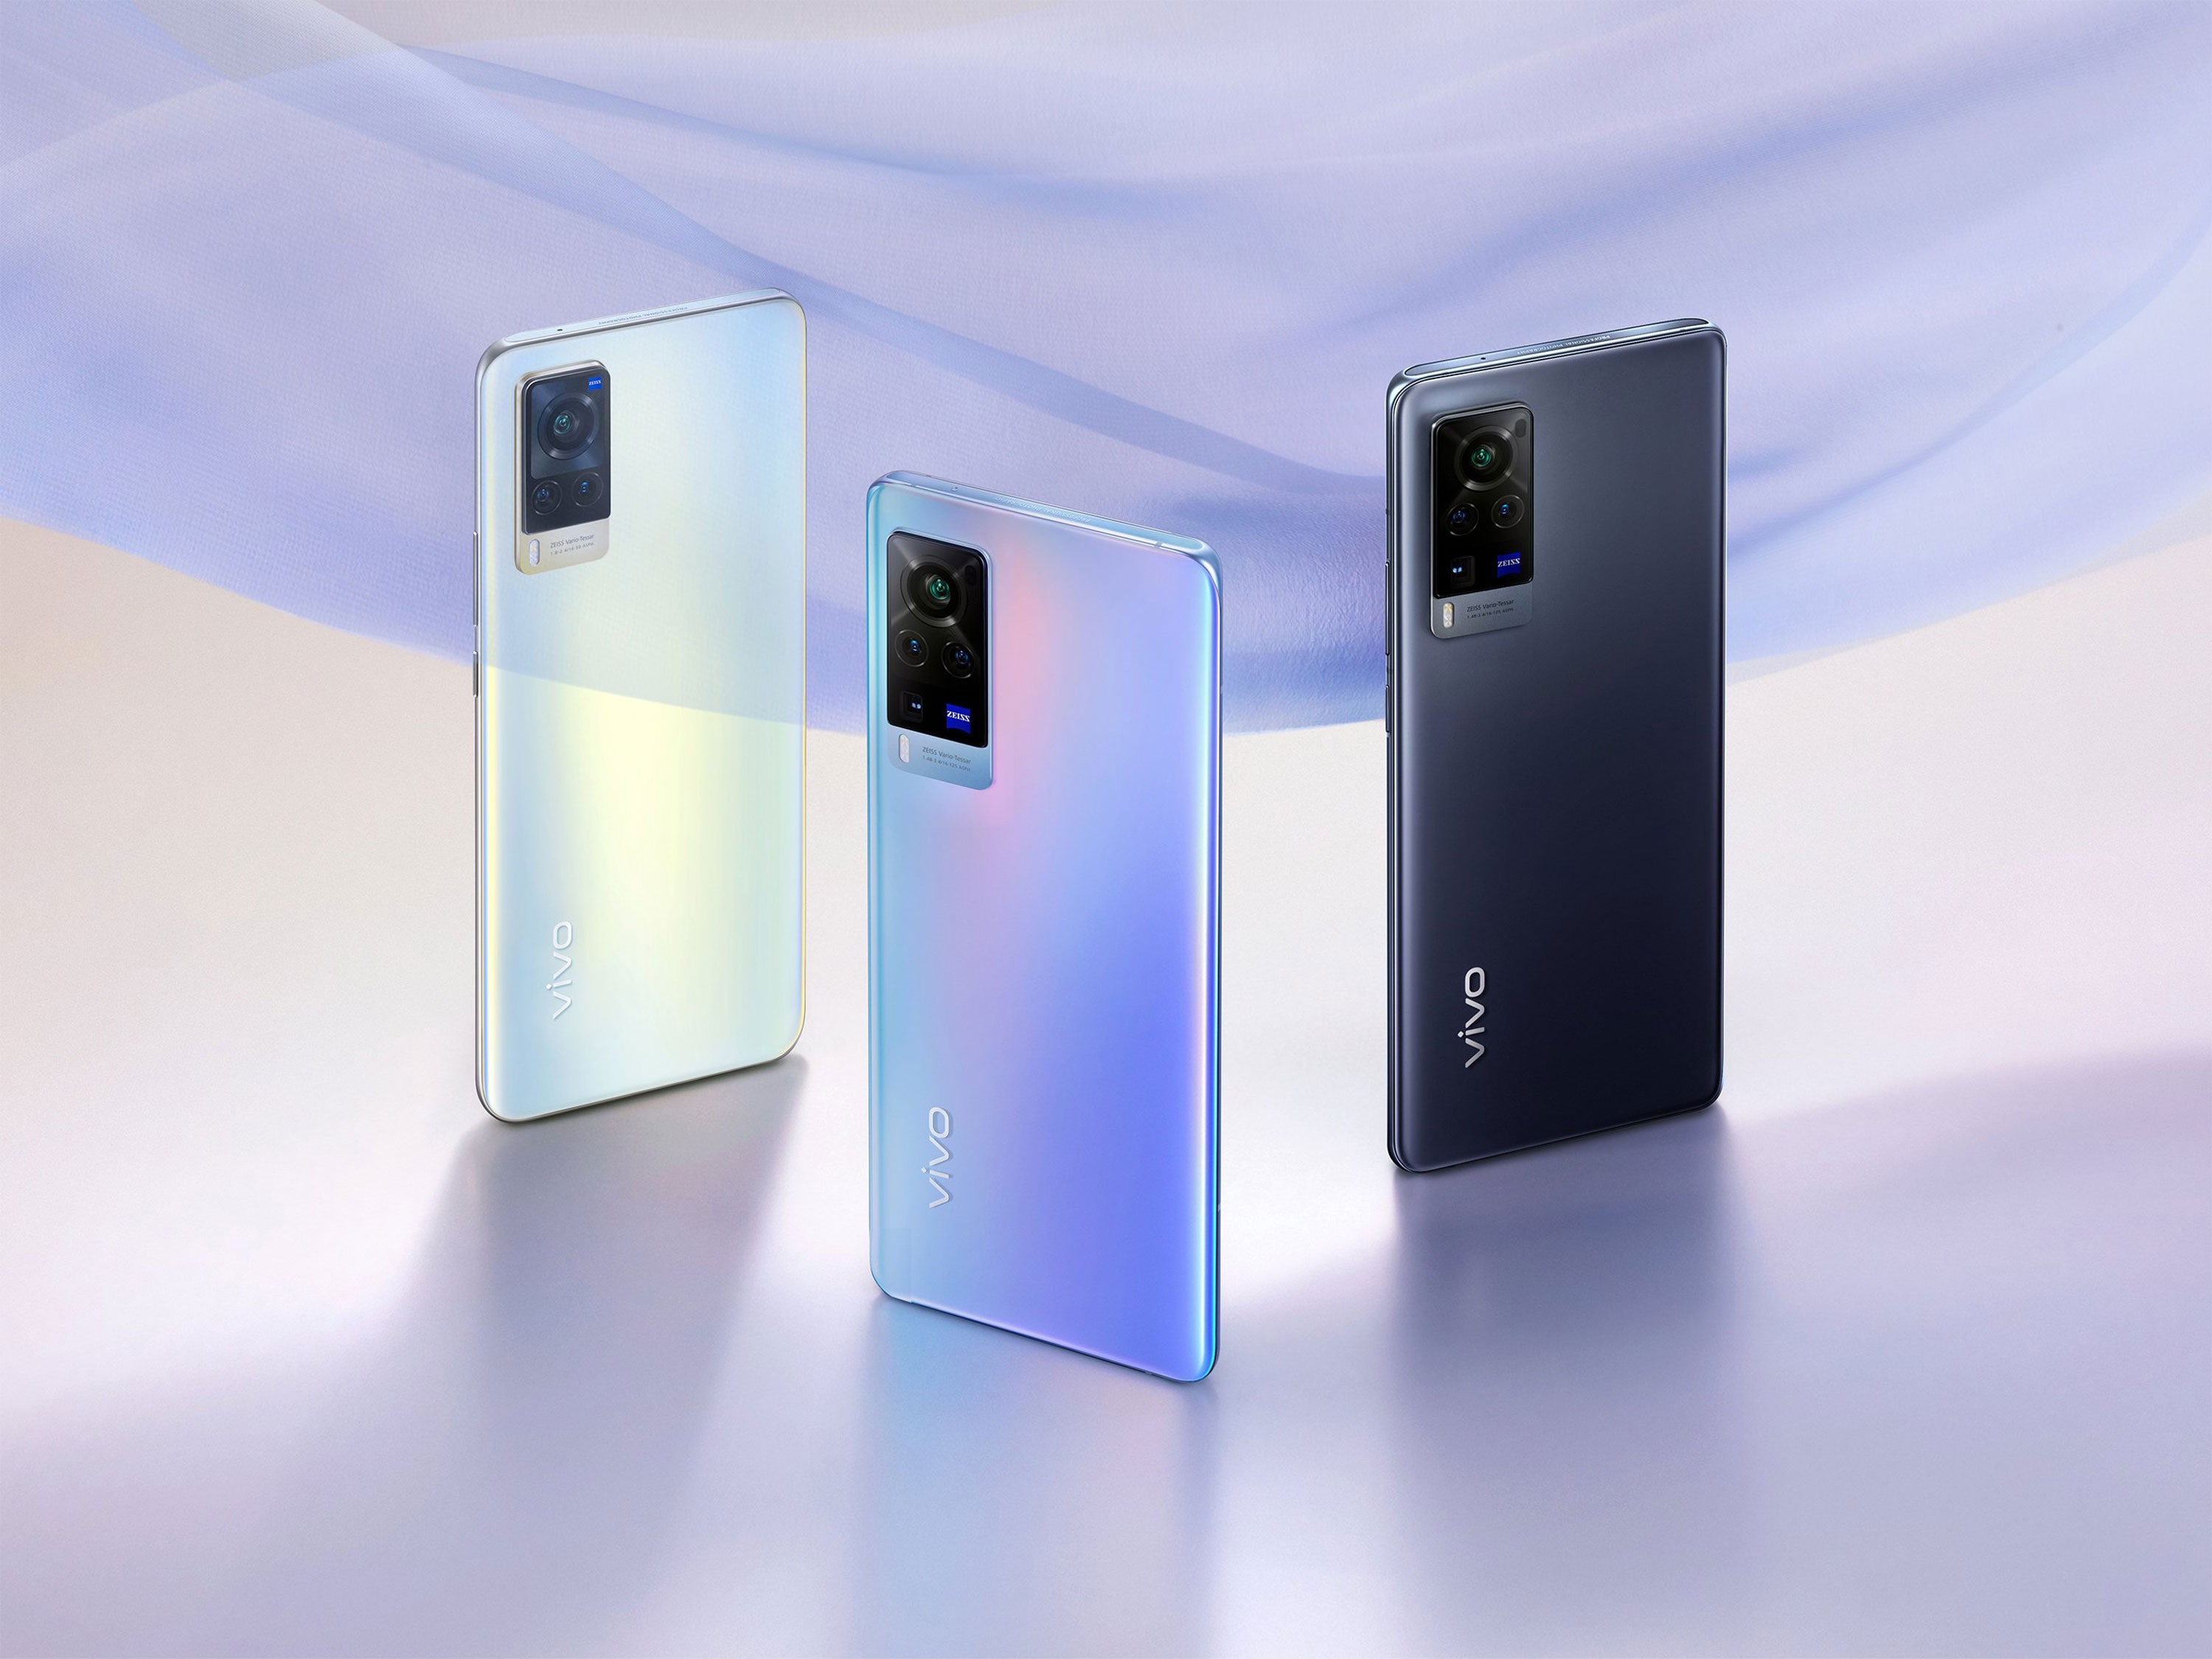 Vivo presentará el teléfono inteligente V23 Pro en enero, los primeros detalles sobre el nuevo producto aparecieron en la red